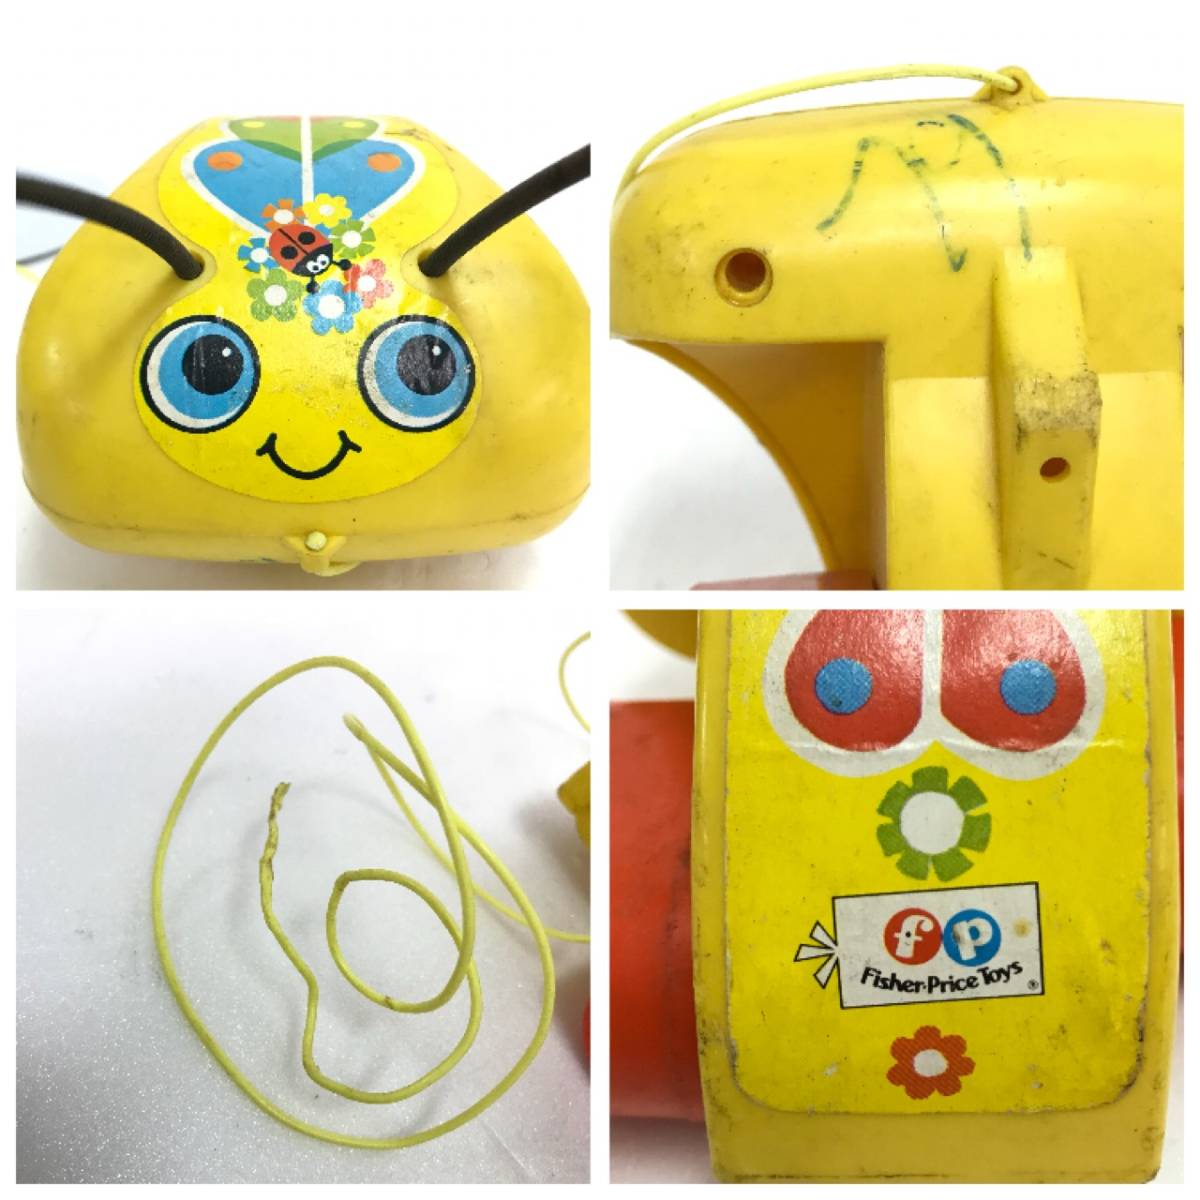 フィッシャー プライス てんとう虫 プルトイ おもちゃ 玩具 Lady Bug レトロ オールド アンティーク ビンテージ FISHER PRICE TOYS D-2259_画像4